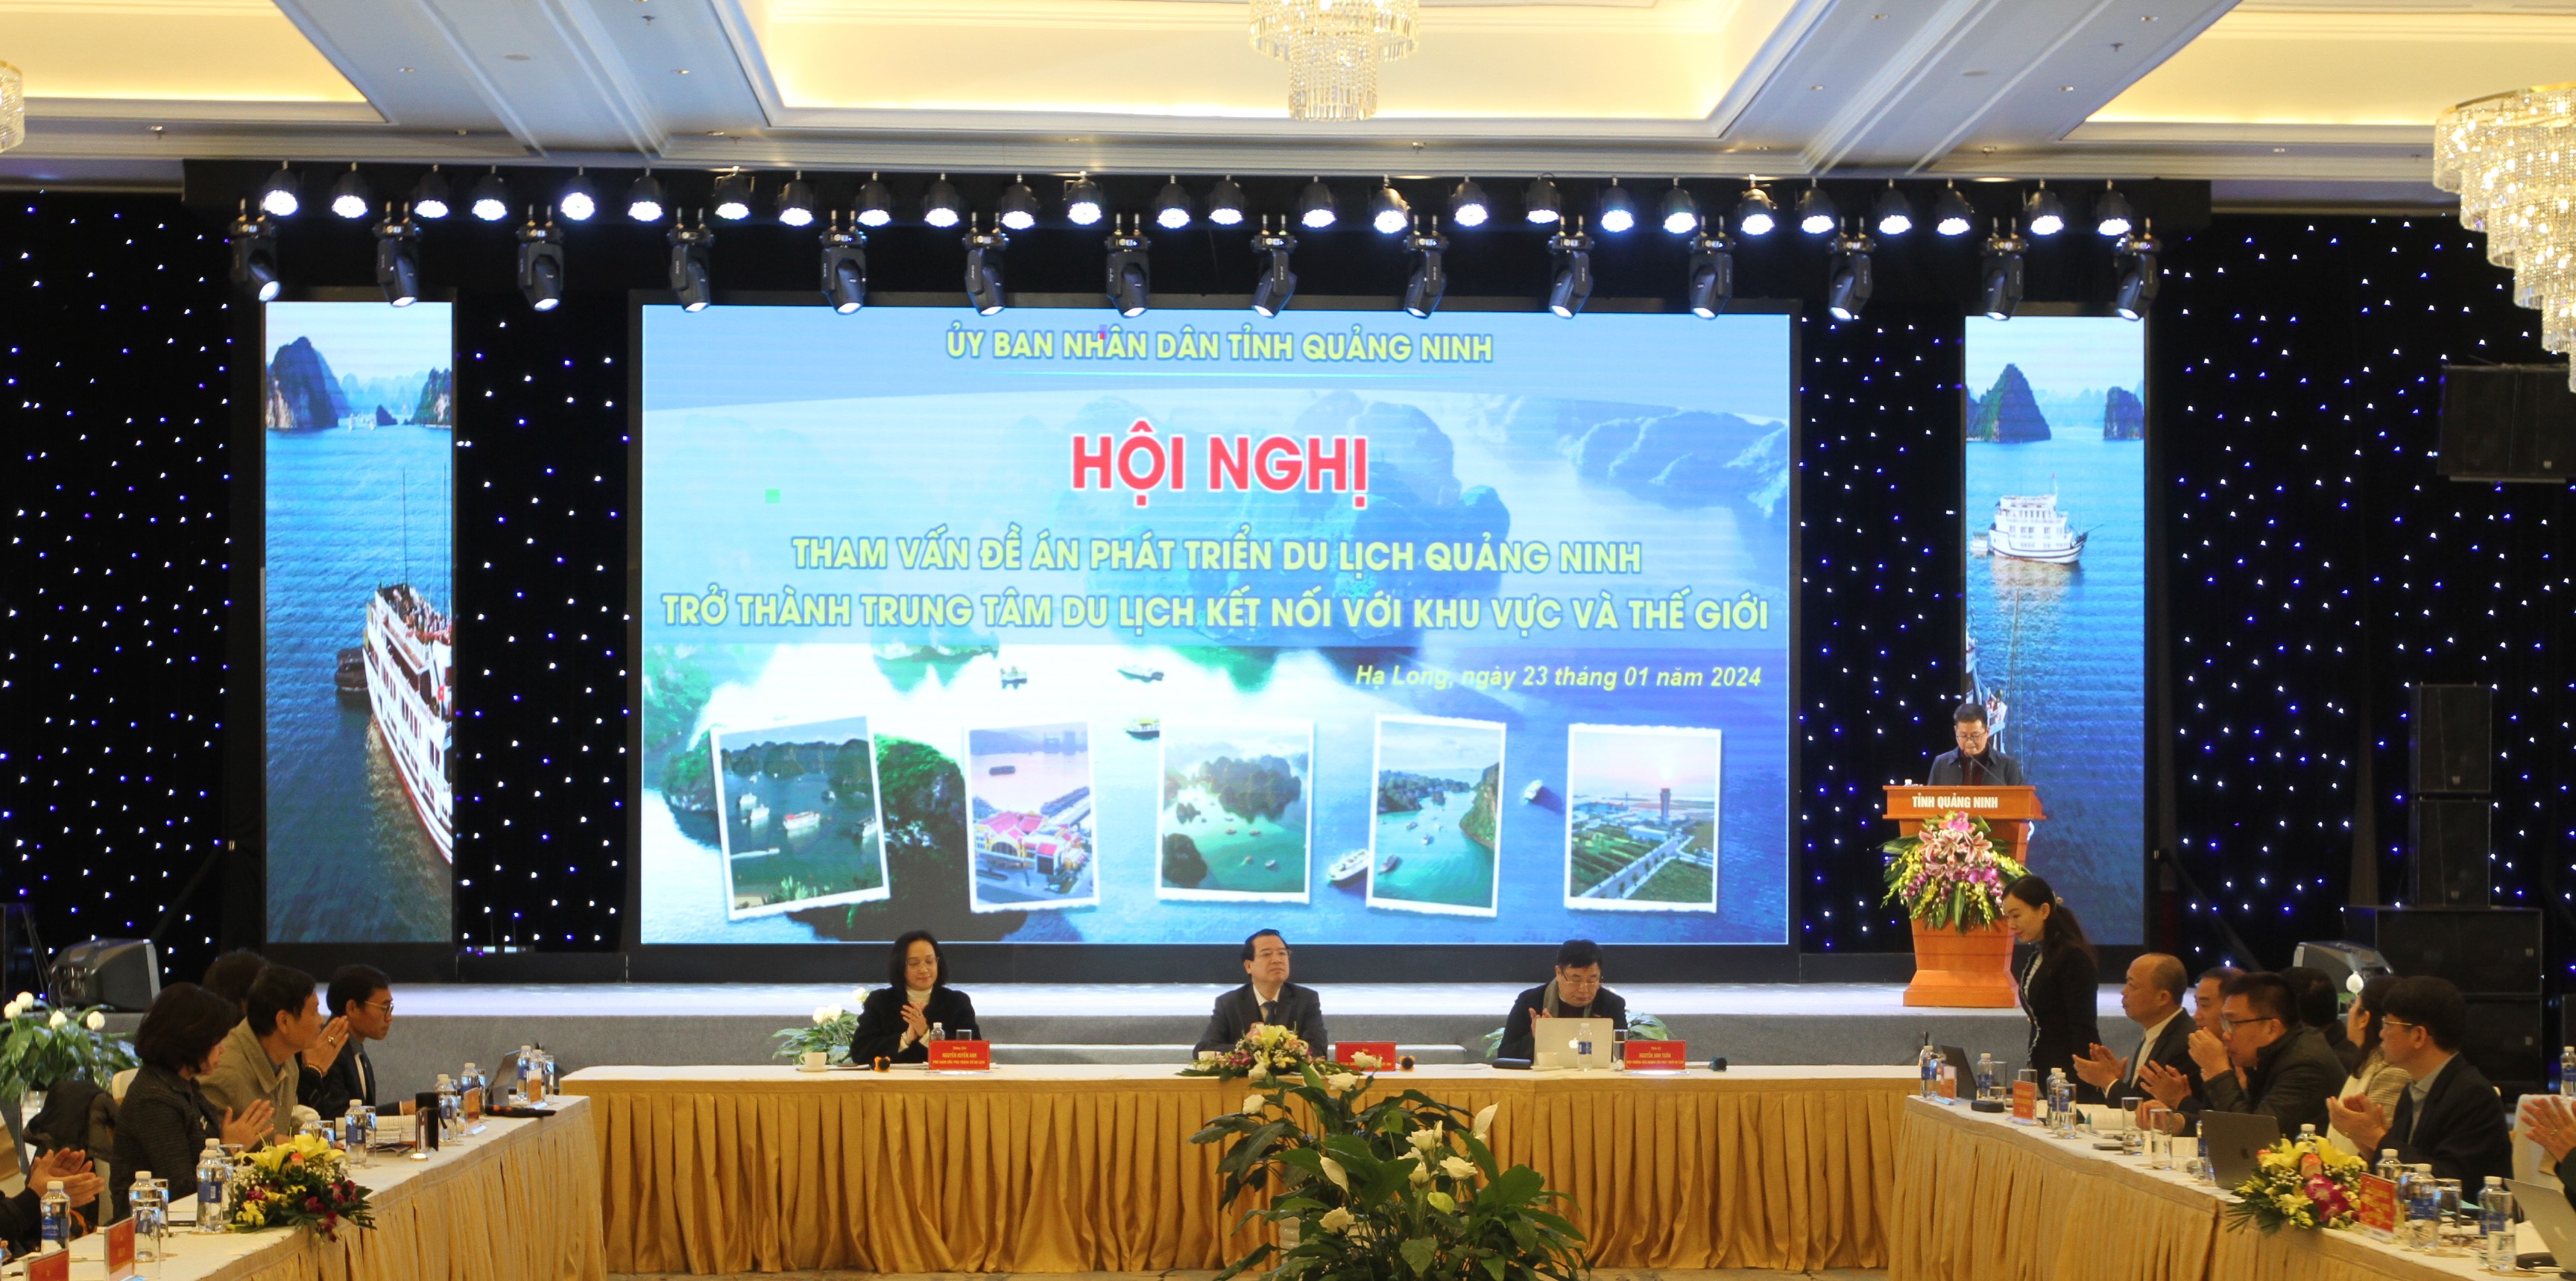 Hội nghị tham vấn Đề án phát triển du lịch Quảng Ninh trở thành trung tâm du lịch kết nối khu vực và thế giới